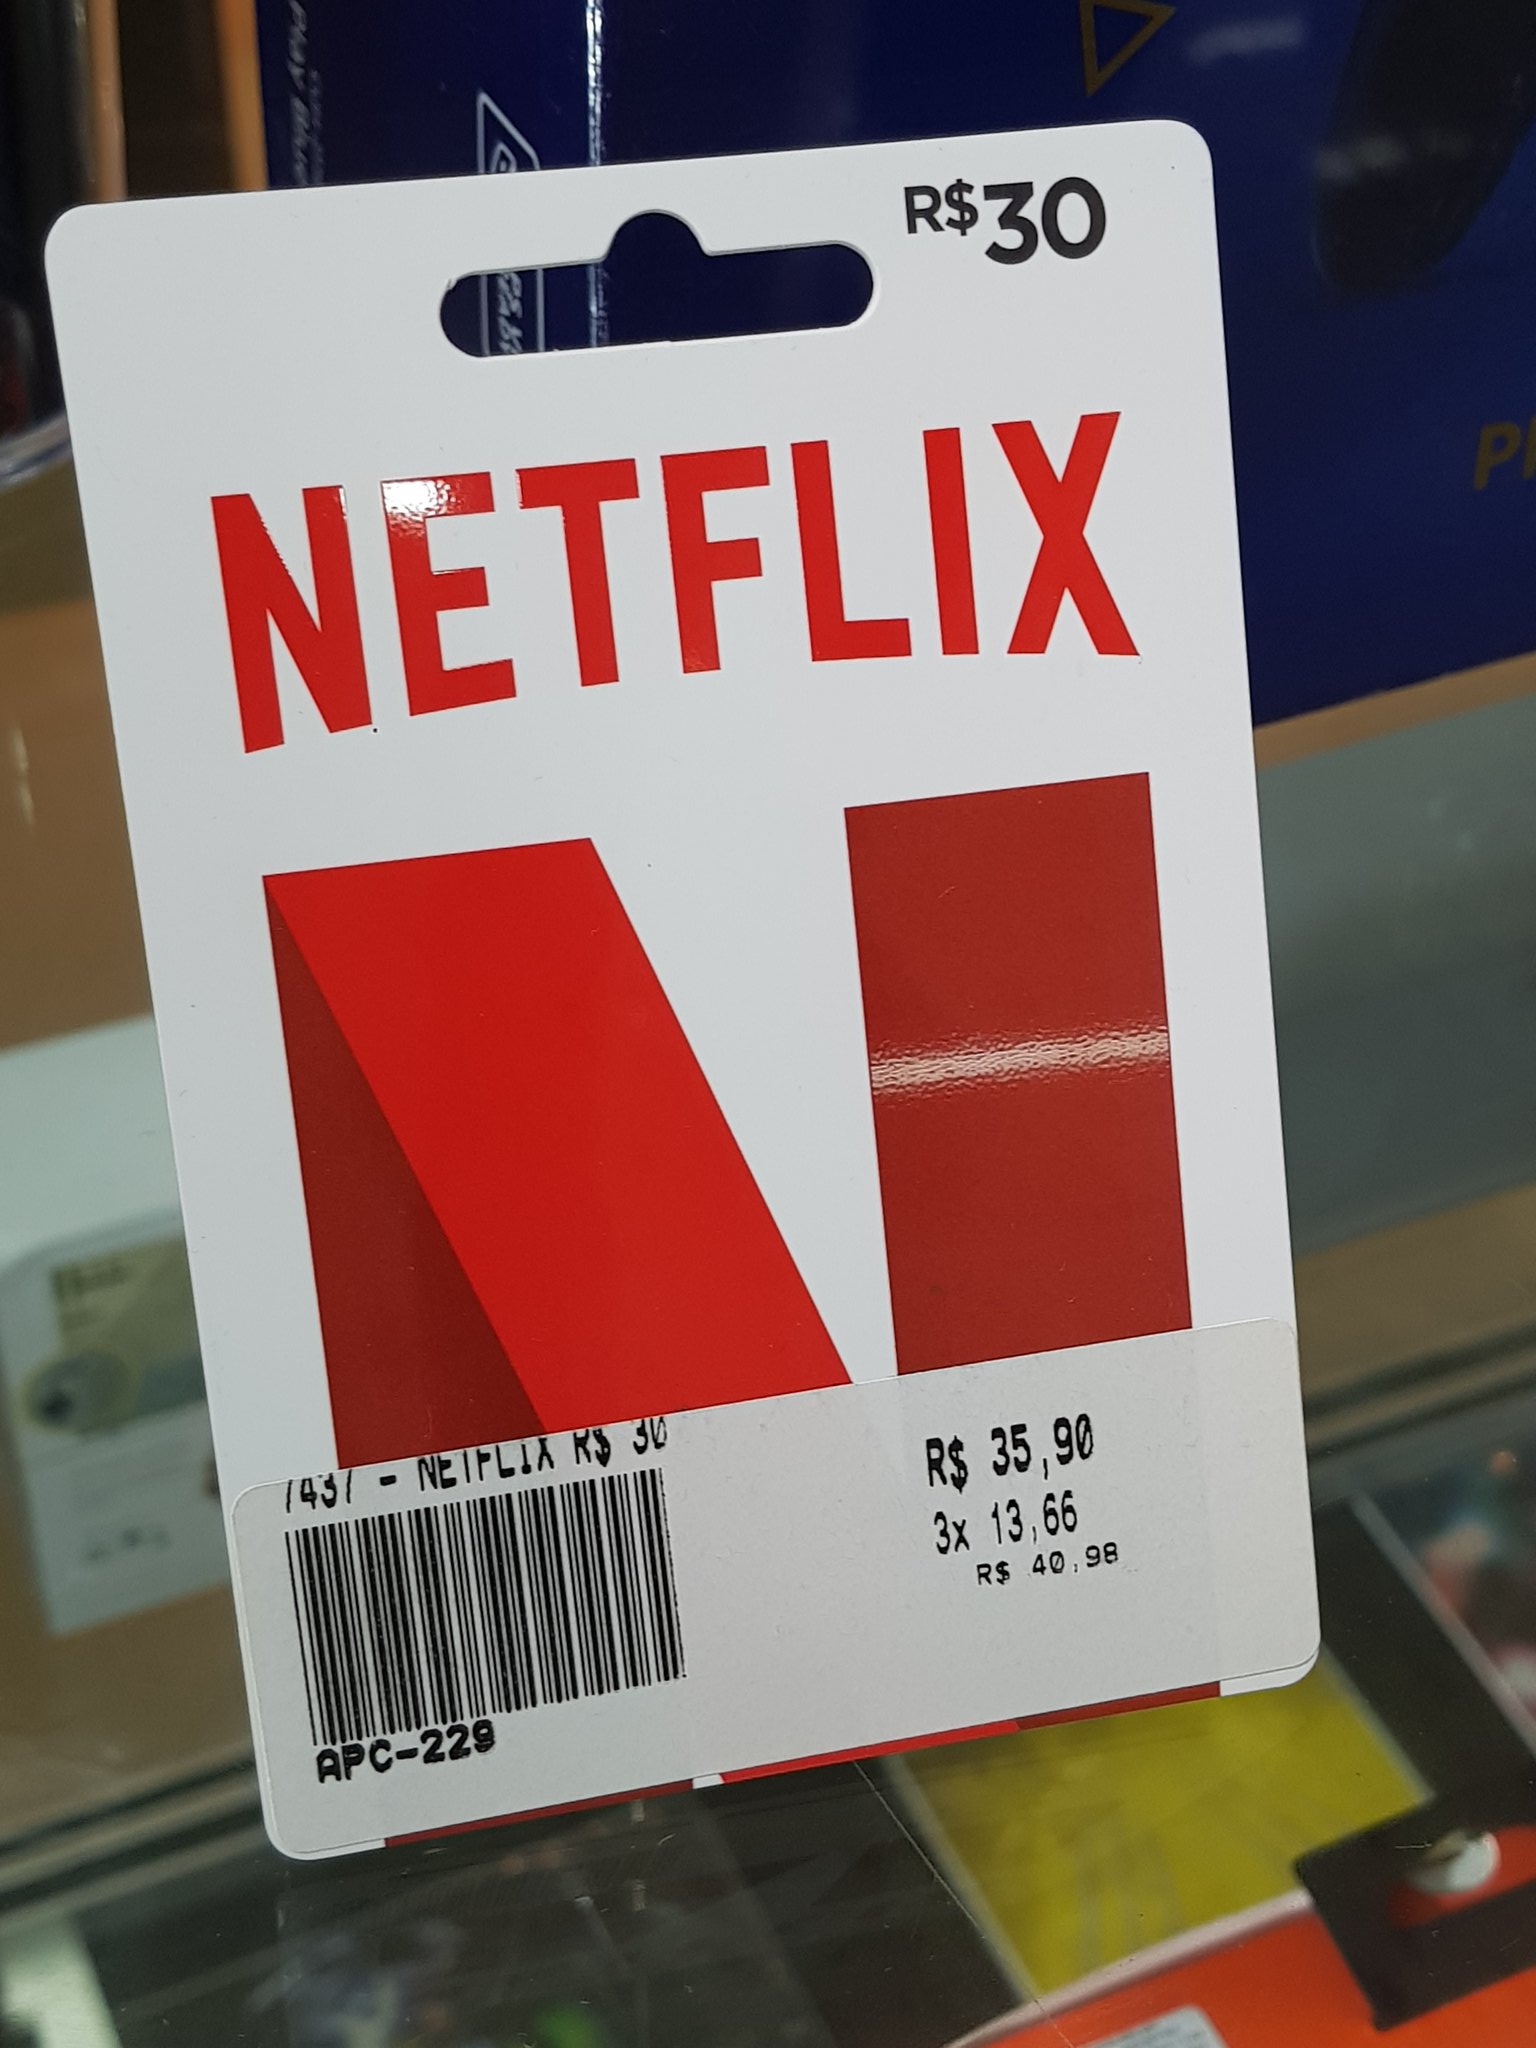 Fiaspo on X: Promoção, compre esse cartão da Netflix de 30 reais